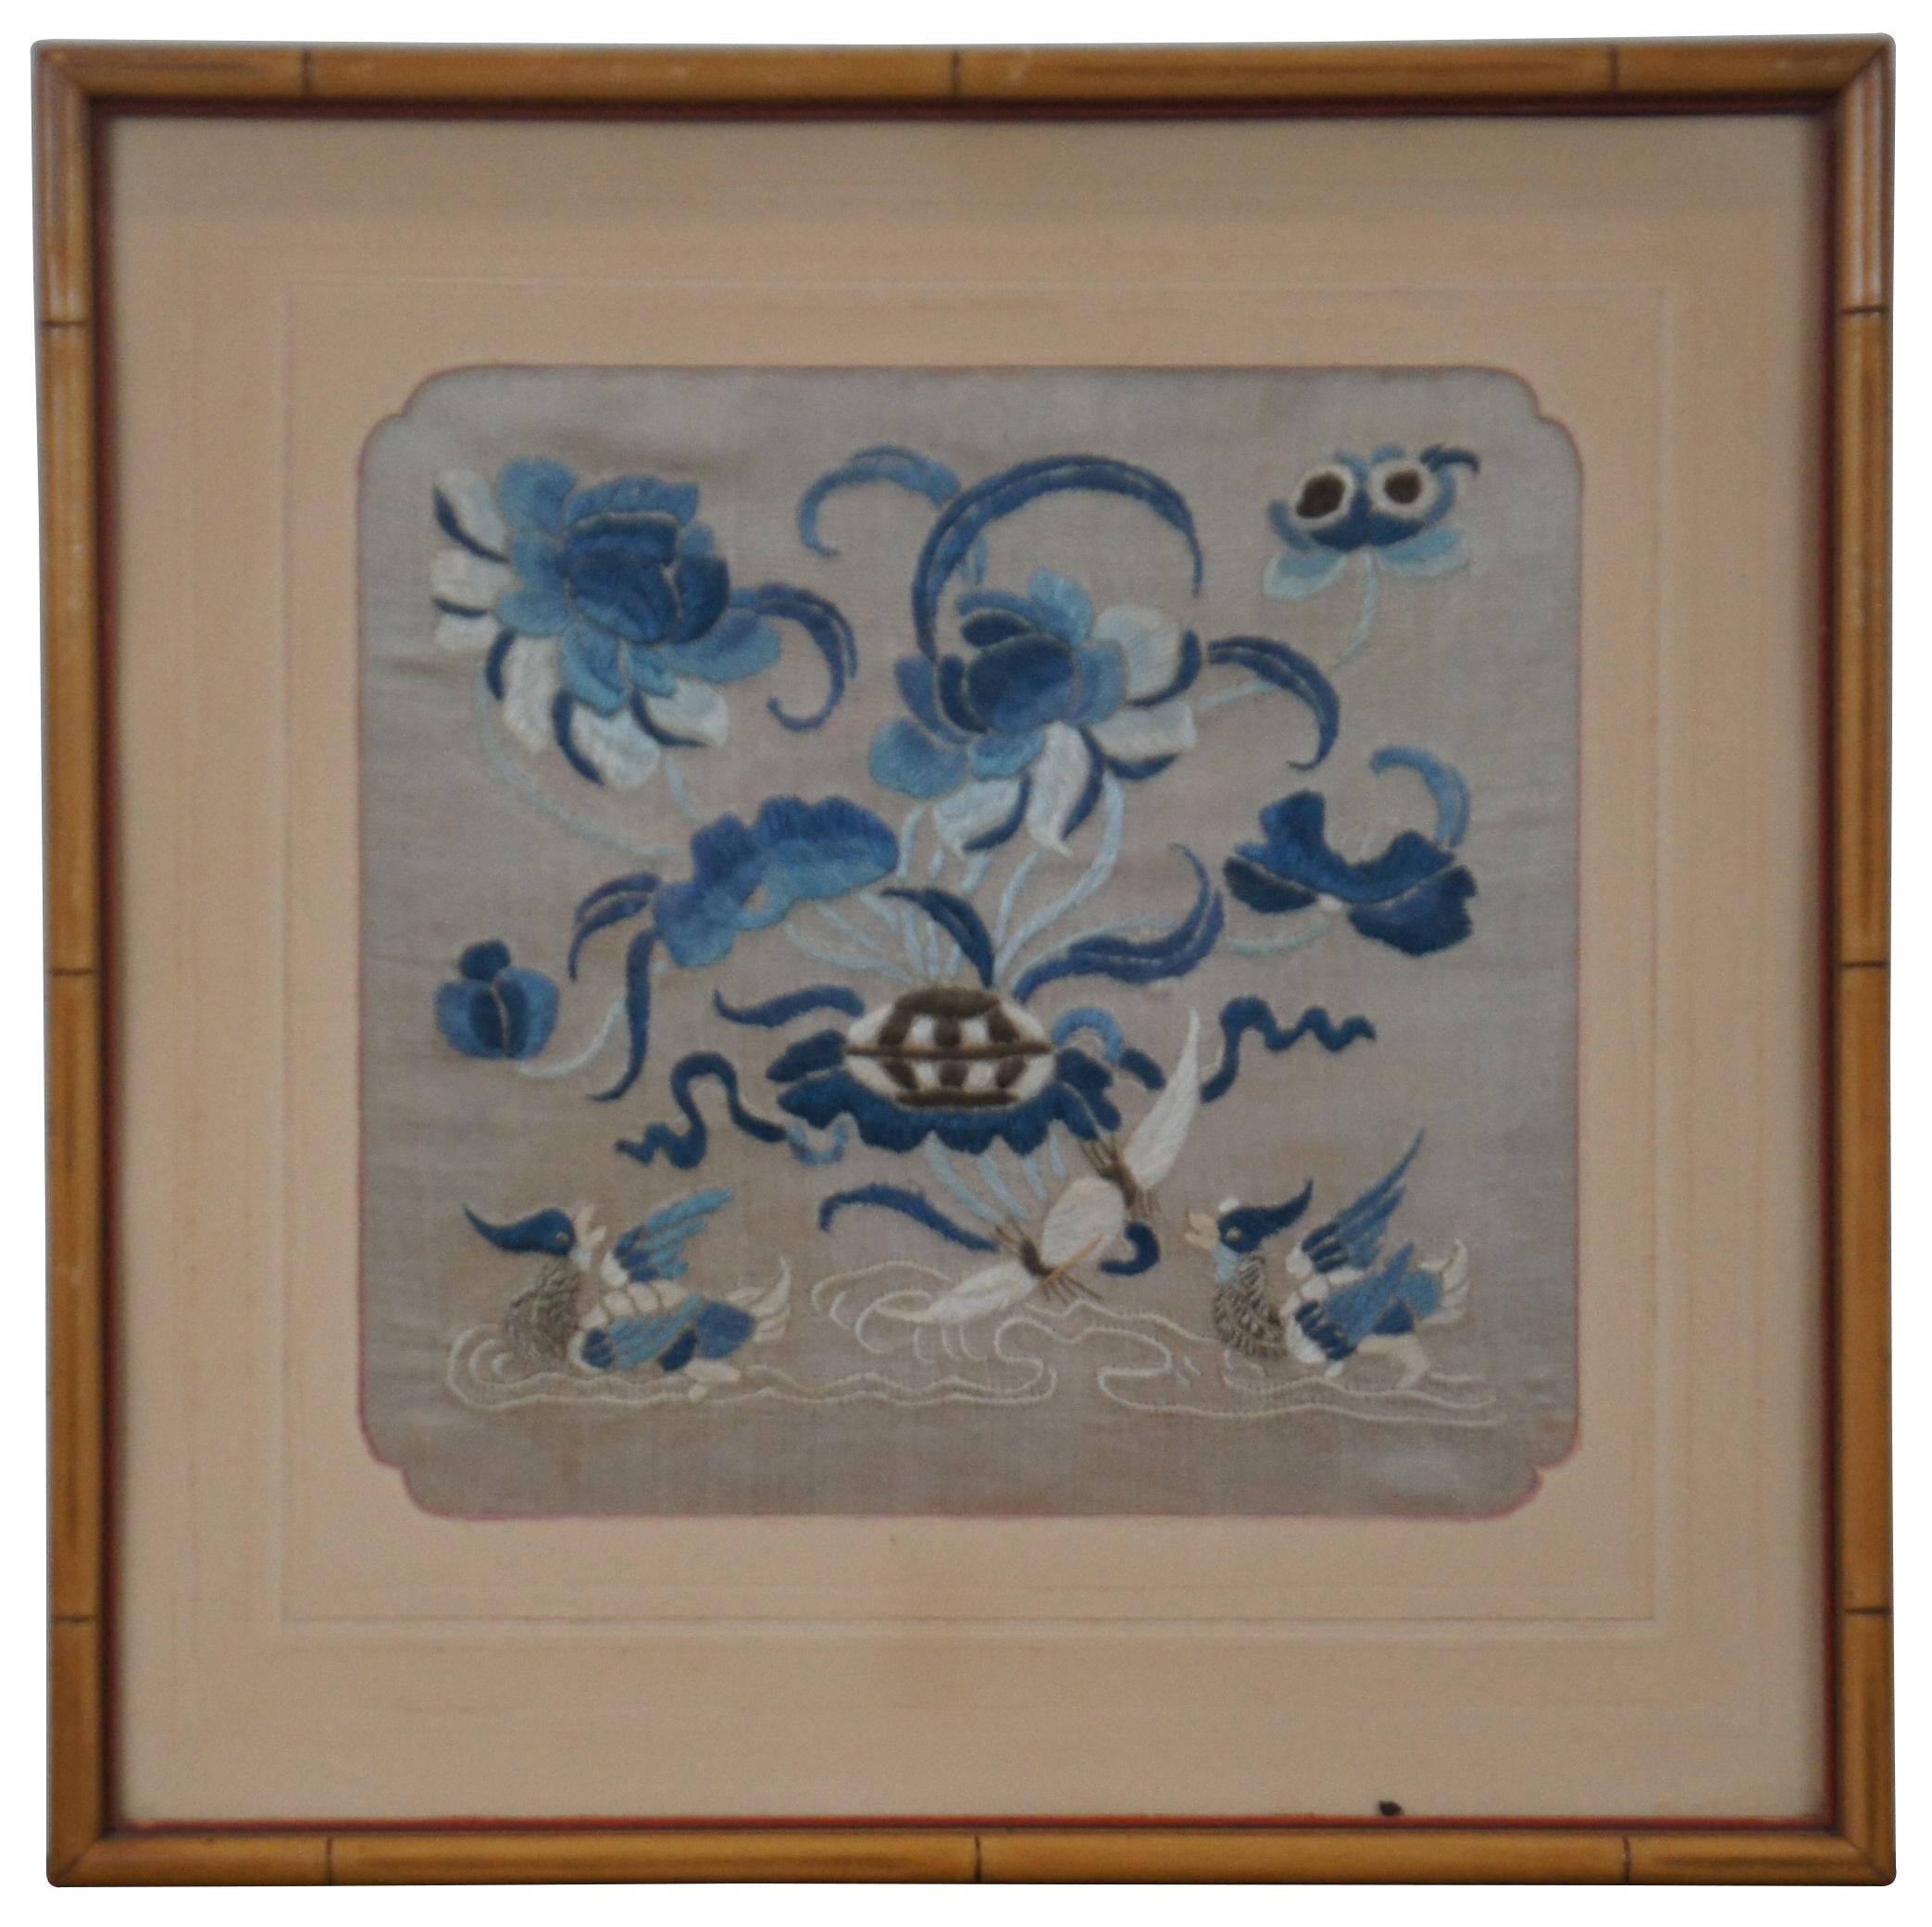 Paire d'insignes ou panneaux de buzi militaires de rang de la cour en textile / tapisserie de soie de la dynastie Qing, brodés d'une scène de canards mandarins et de fleurs bleues. Encadré en faux bambou.

Un carré de mandarin, également connu